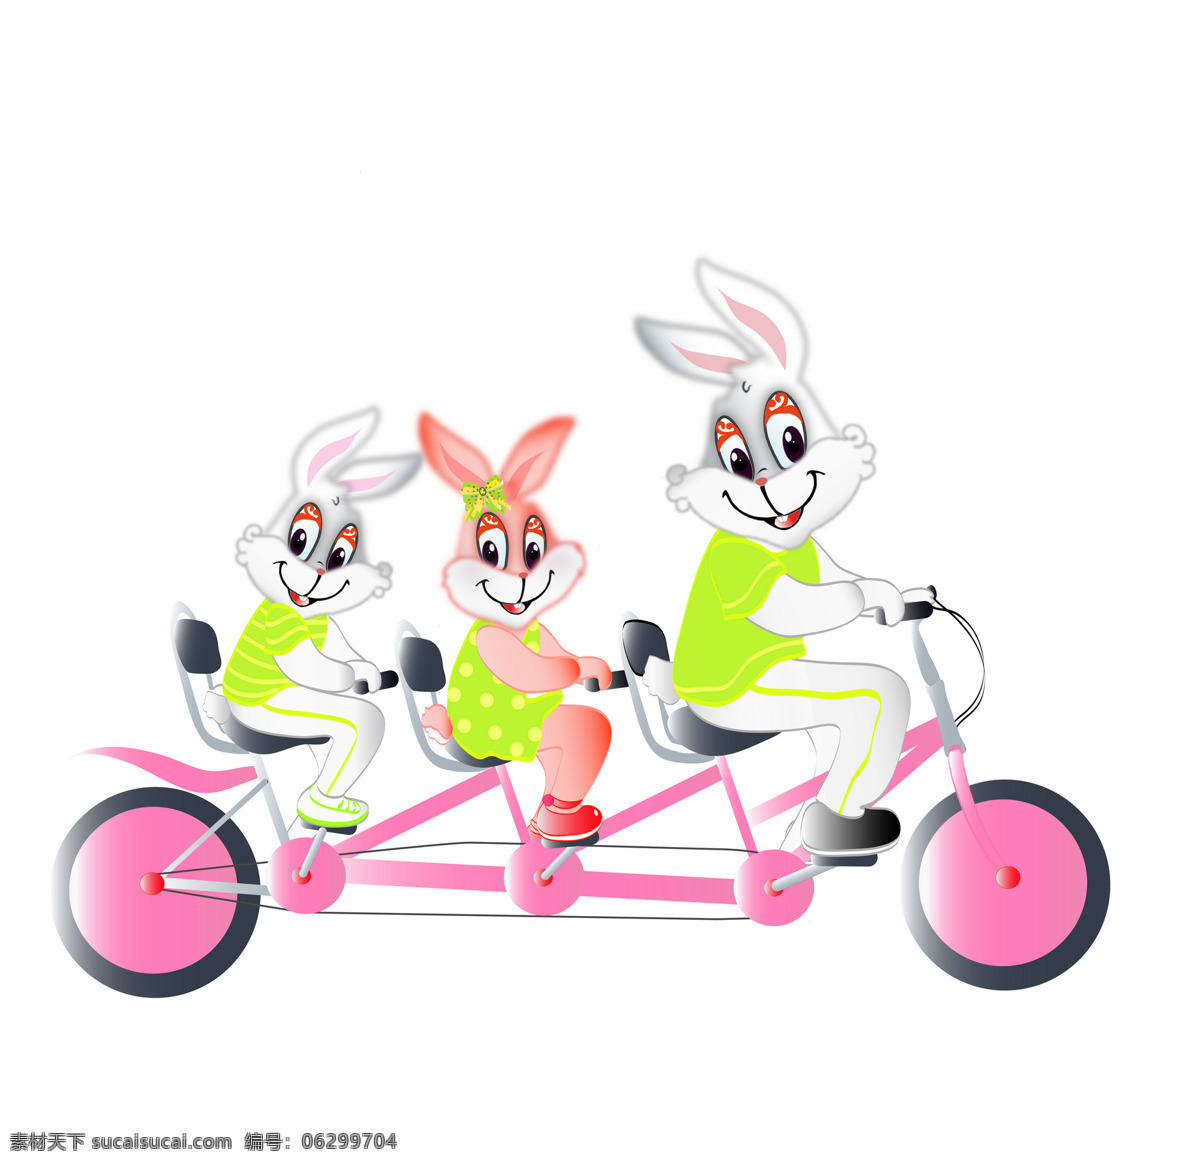 卡通 兔 插画 动漫动画 卡通兔 可爱 漫画 兔年 设计素材 模板下载 兔子 插画集